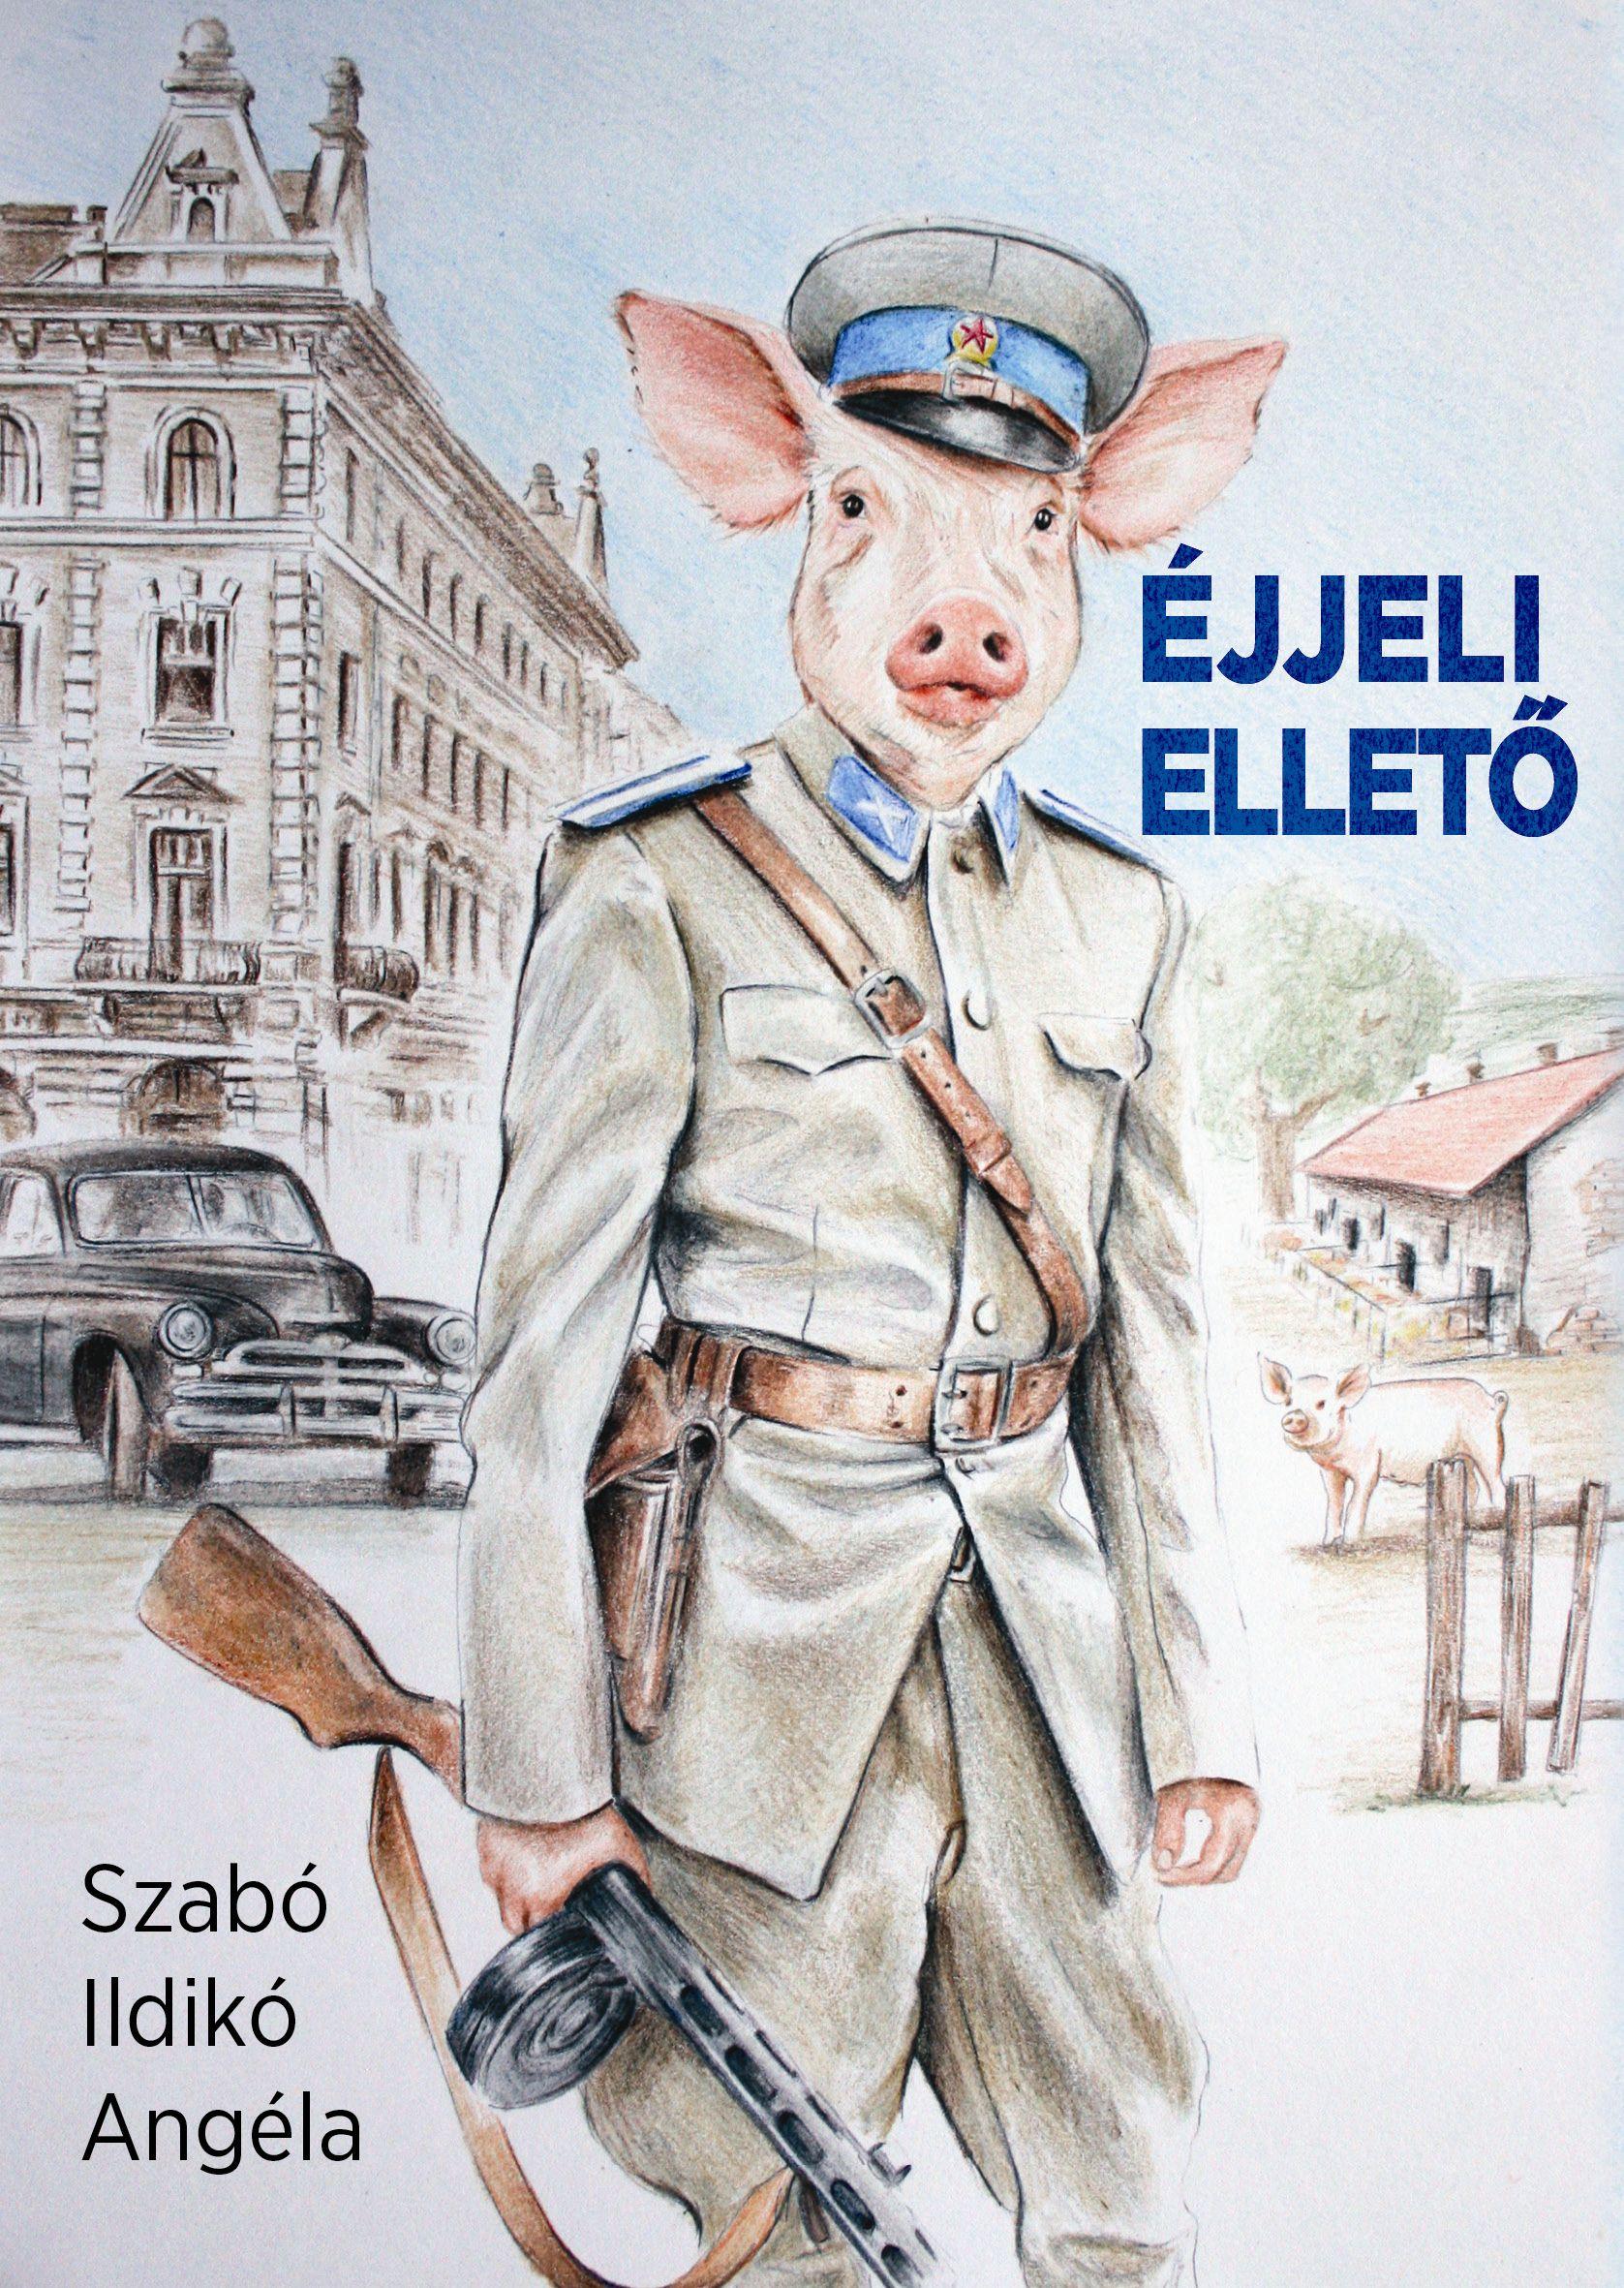 Szabó Ildikó Angéla - Éjjeli ellető - ÜKH 2019